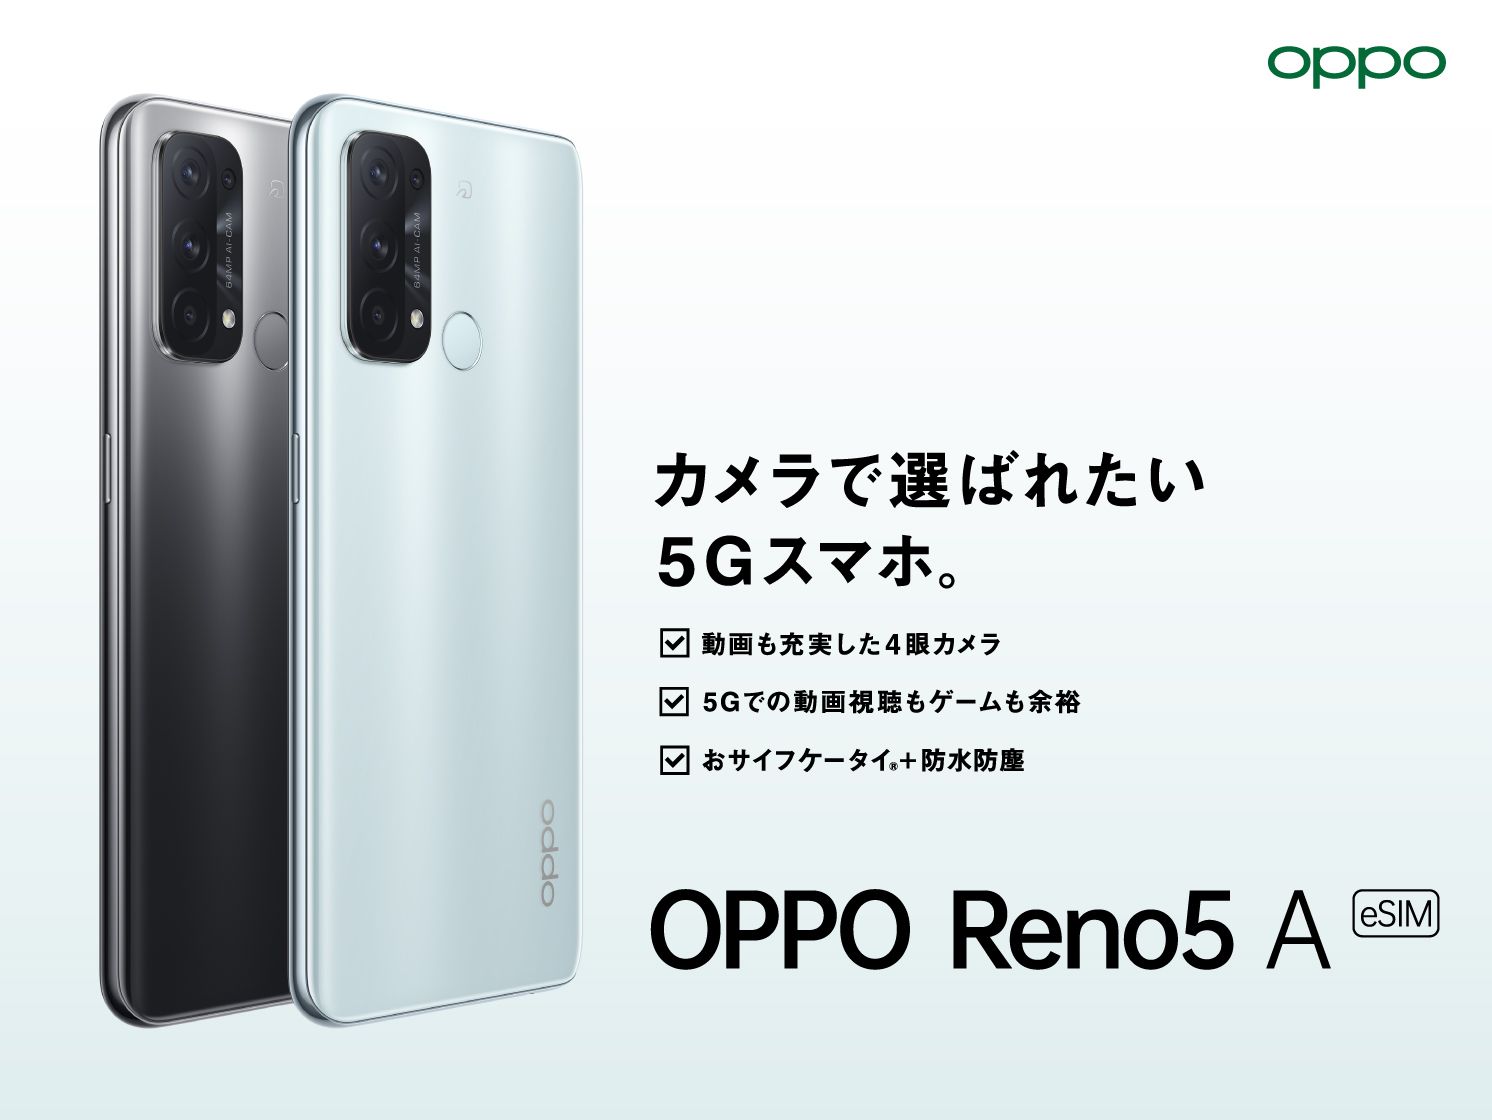 OPPO Reno5 A (eSIM)」がワイモバイルにて 2月24日(木)から発売開始 ...